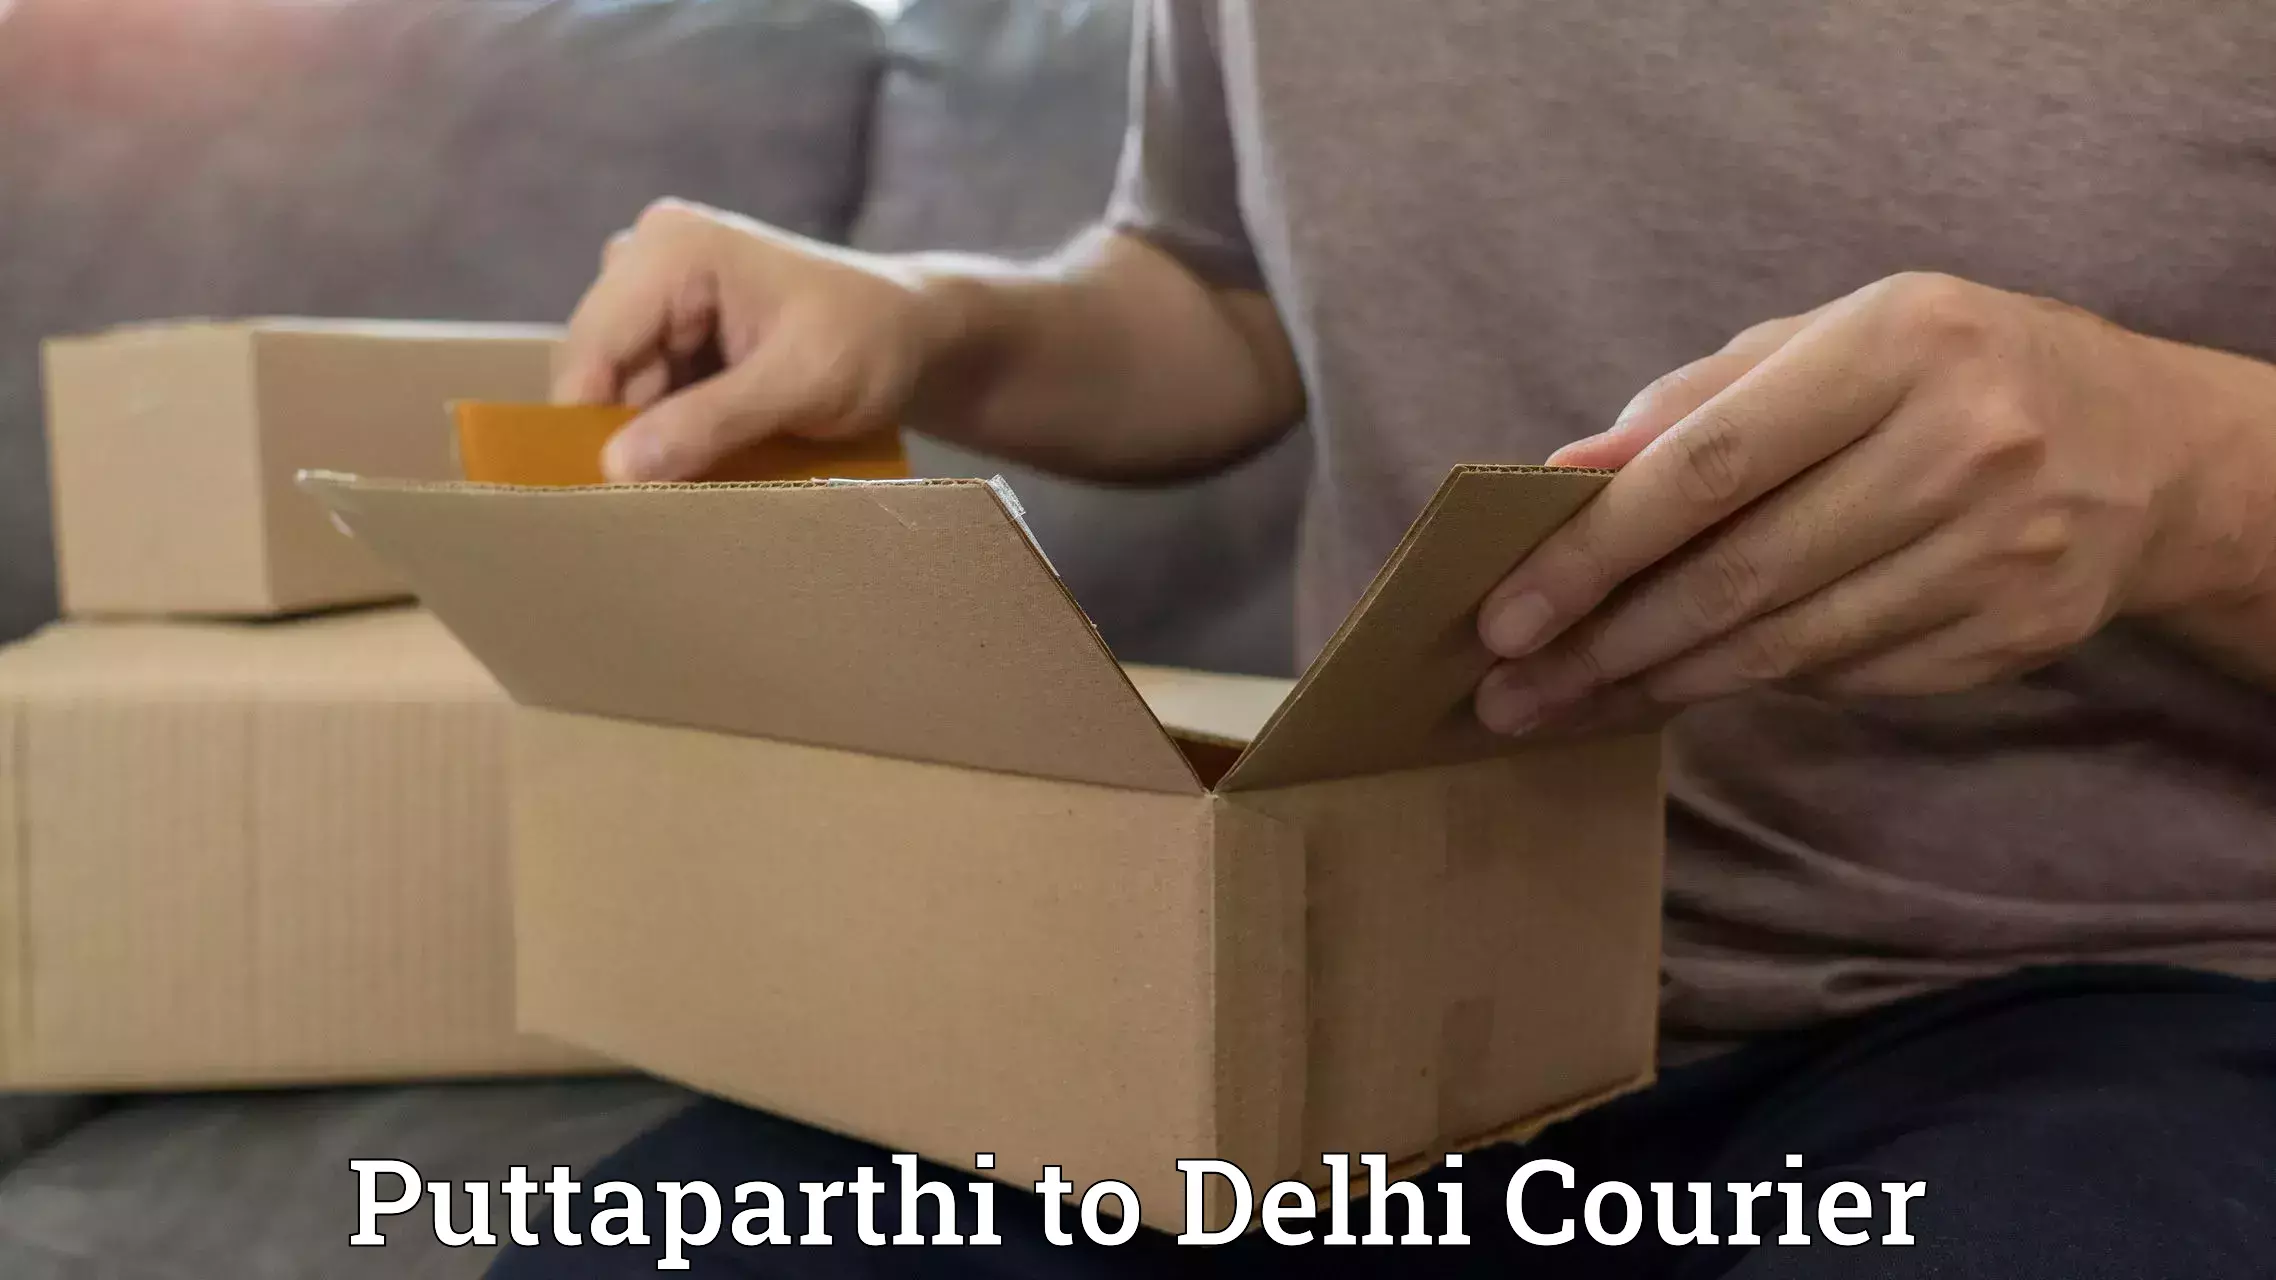 Global logistics network Puttaparthi to NIT Delhi